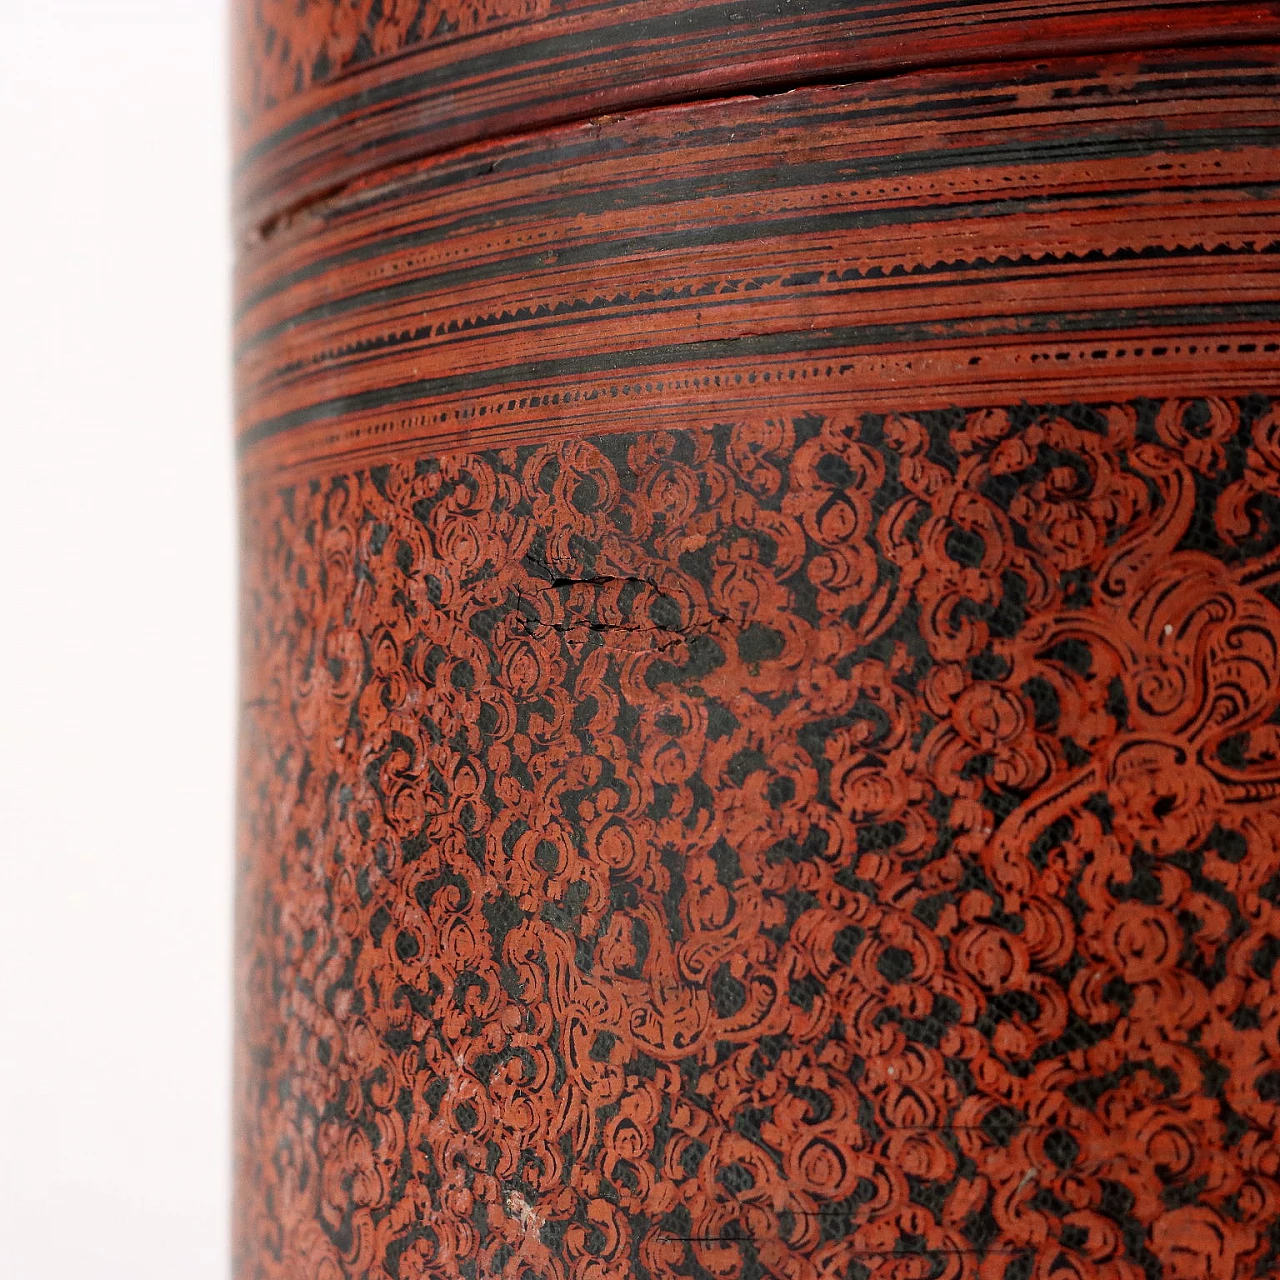 Scatola cilindrica in legno laccato porta betel, '800 7